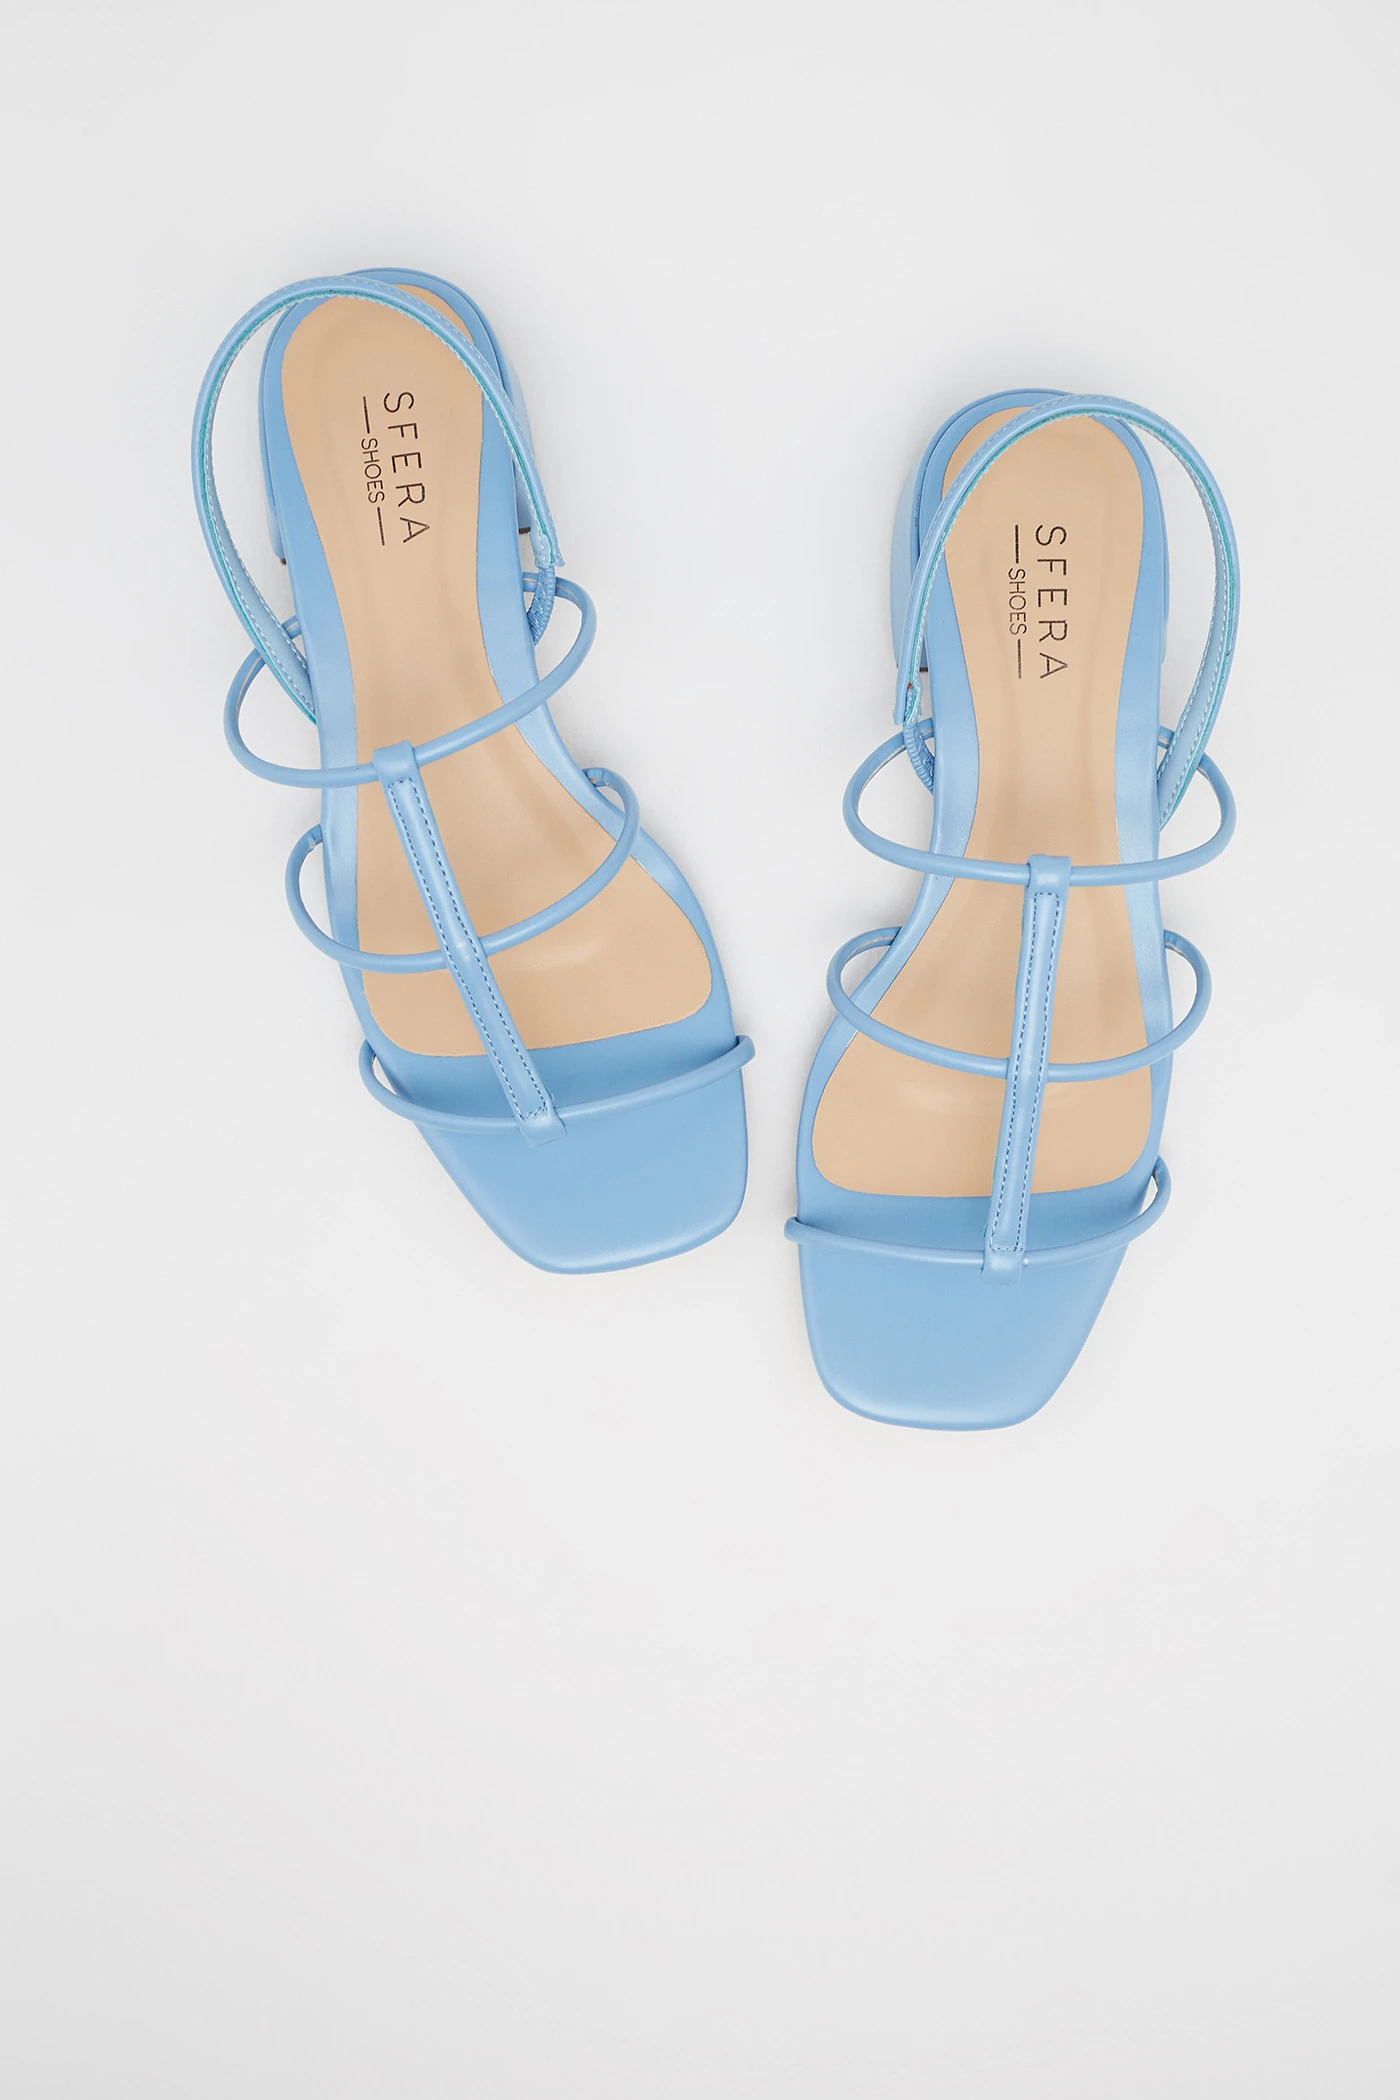 Las sandalias más bonitas de Sfera (que ya nos hacen soñar con el verano) se a convertir en tu calzado cómodo favorito de temporada | Mujer Hoy